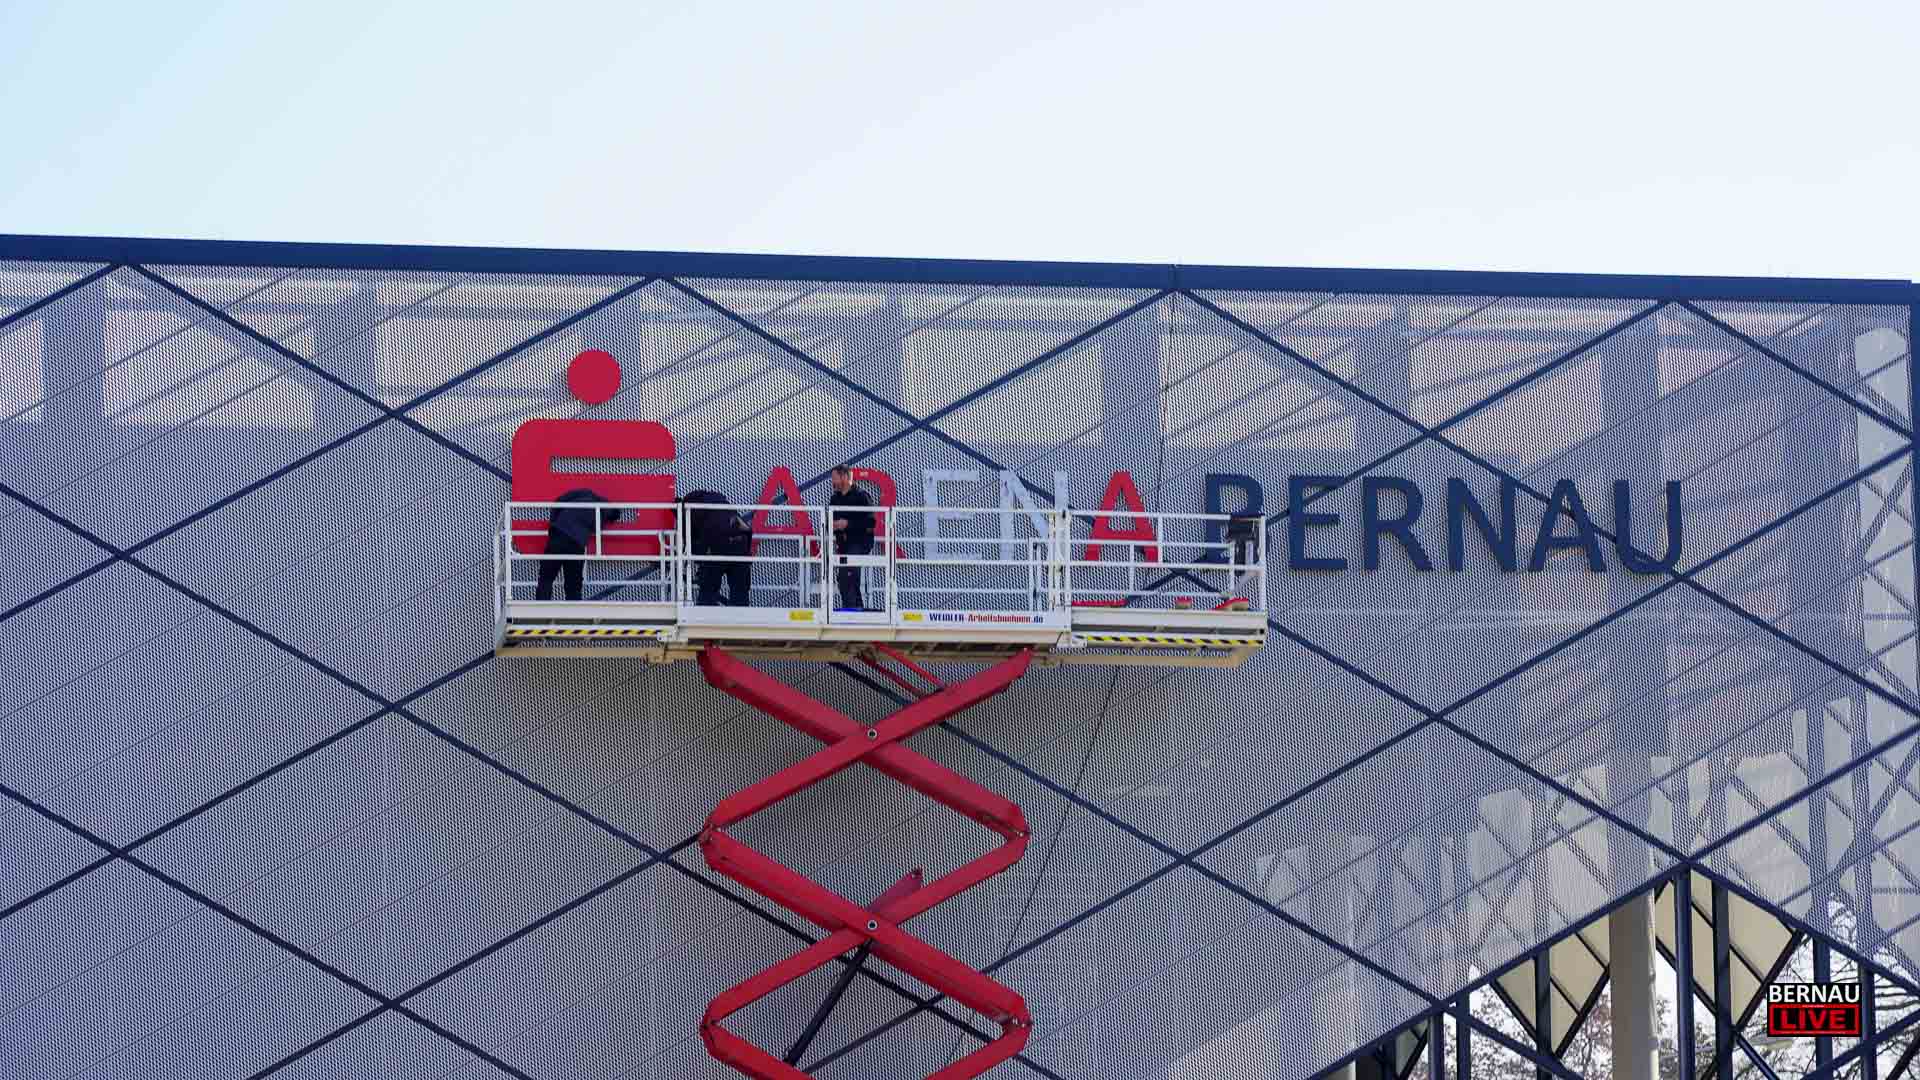 Die Sparkassen-Arena Bernau erhält ihren "Sponsoren" Schriftzug